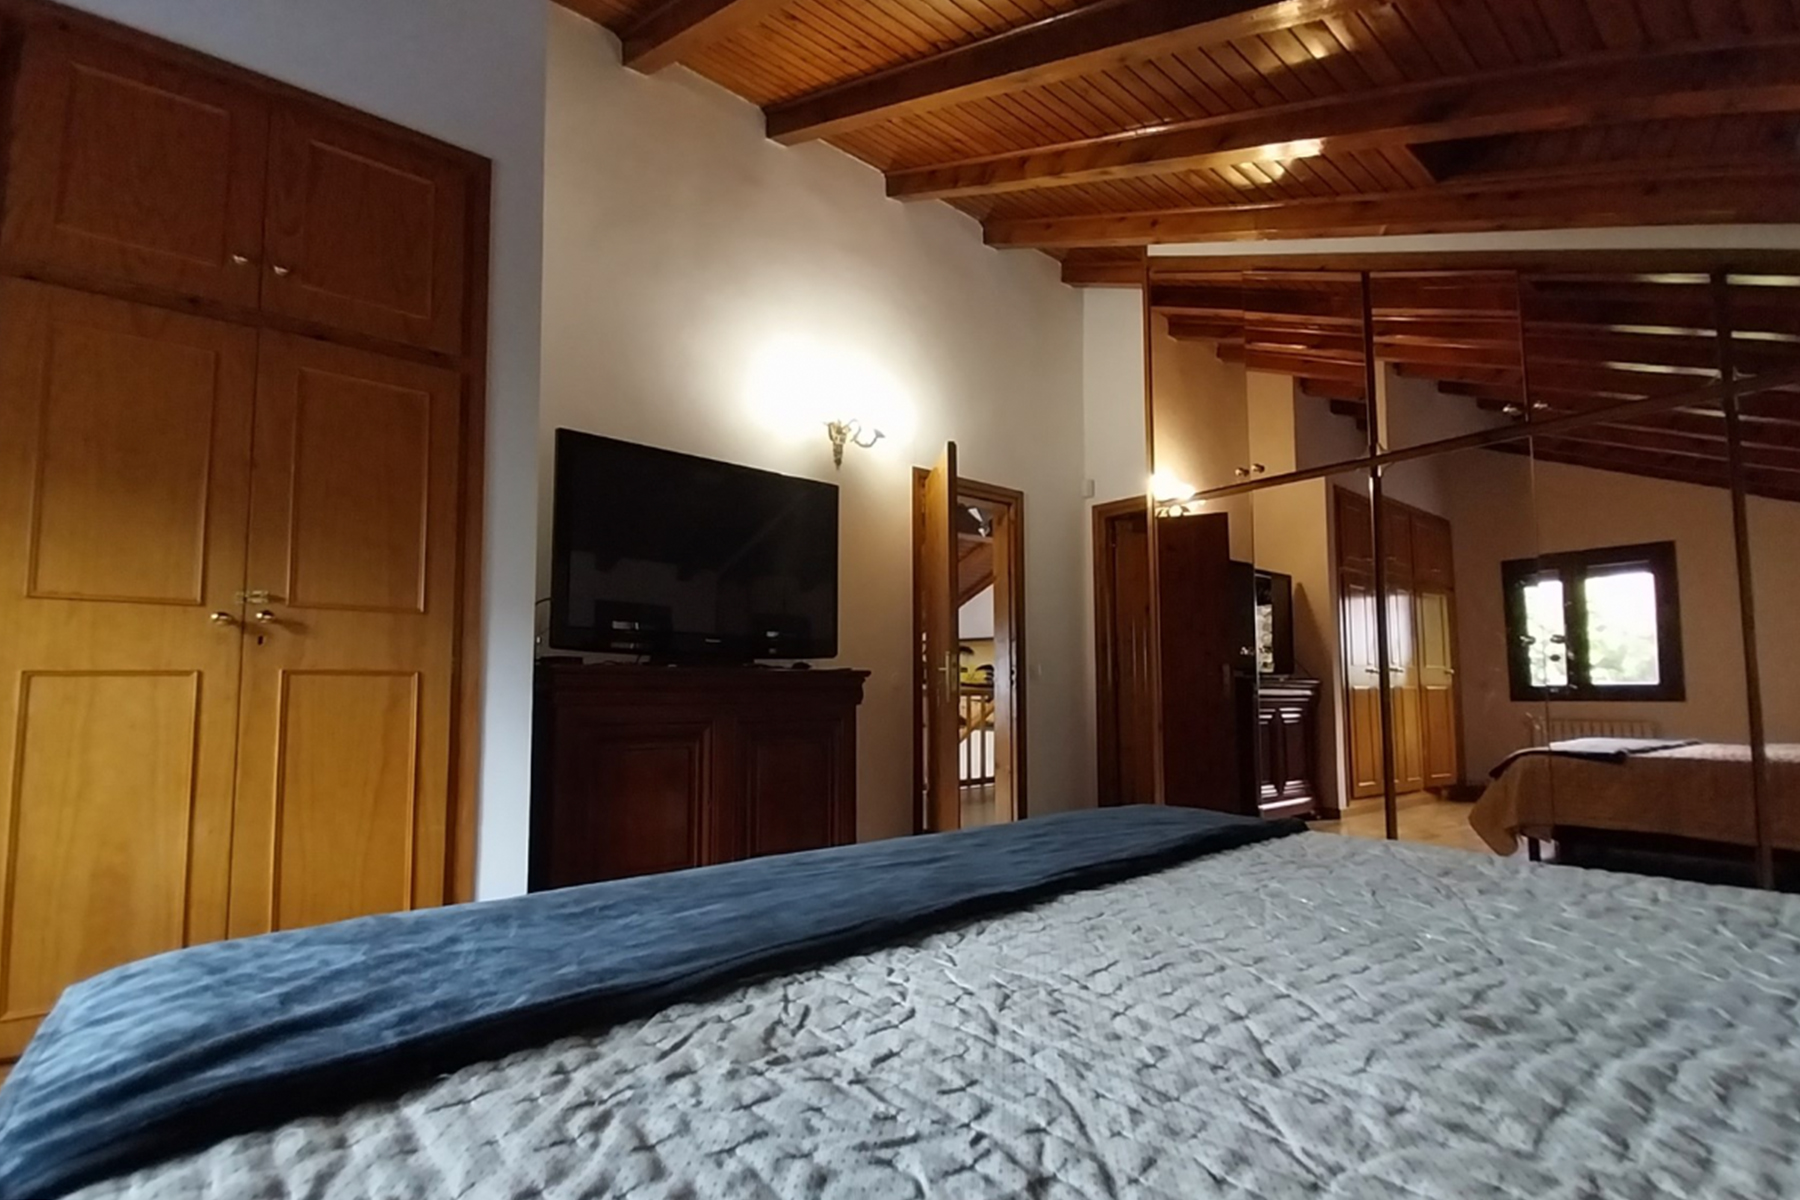 Chalet de alquiler en Escaldes Engordany, 4 habitaciones, 600 metros